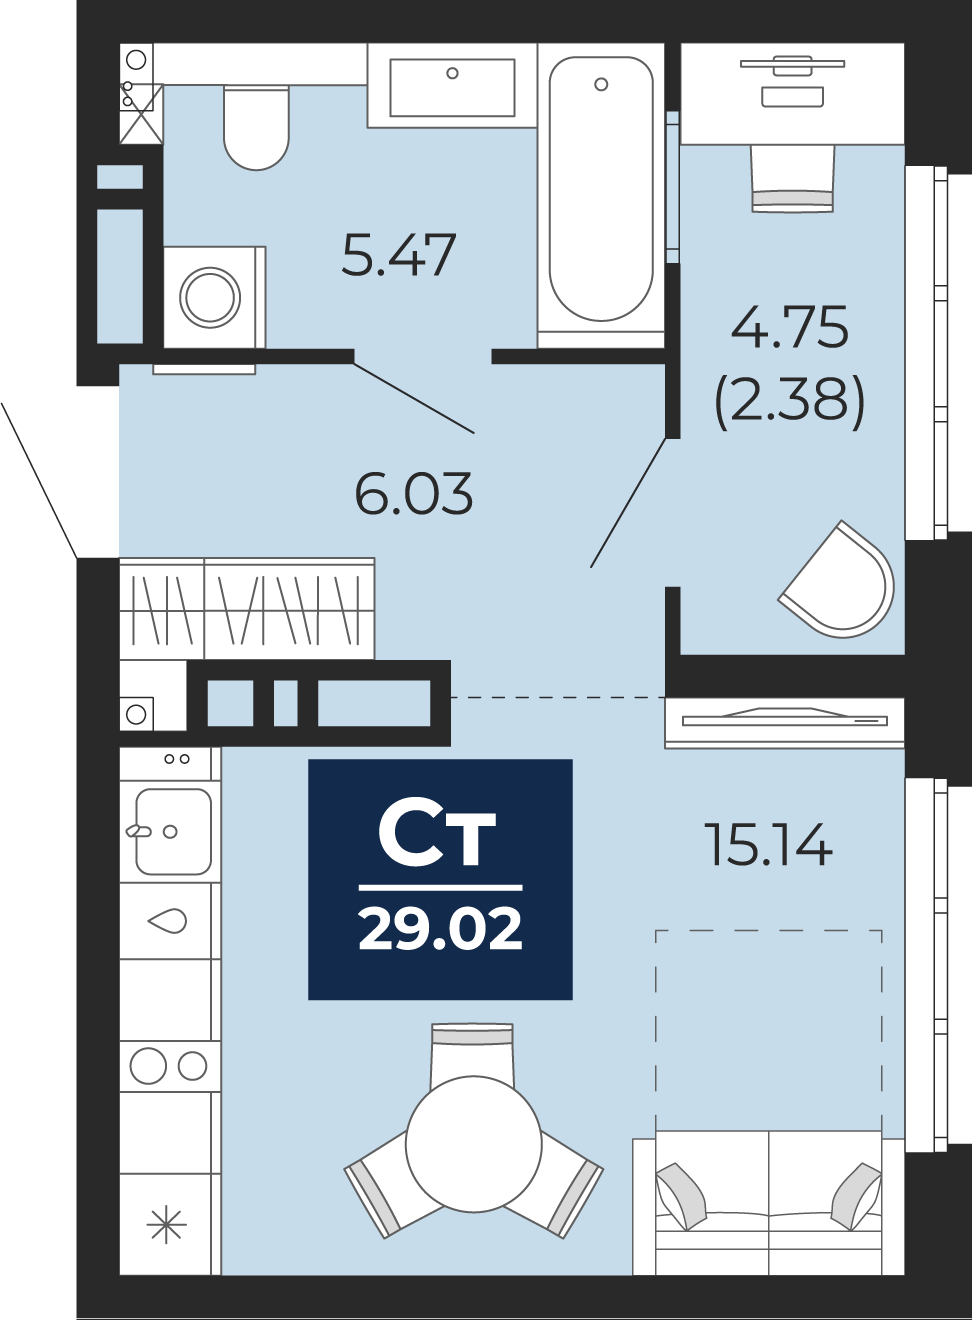 Квартира № 417, Студия, 29.02 кв. м, 18 этаж